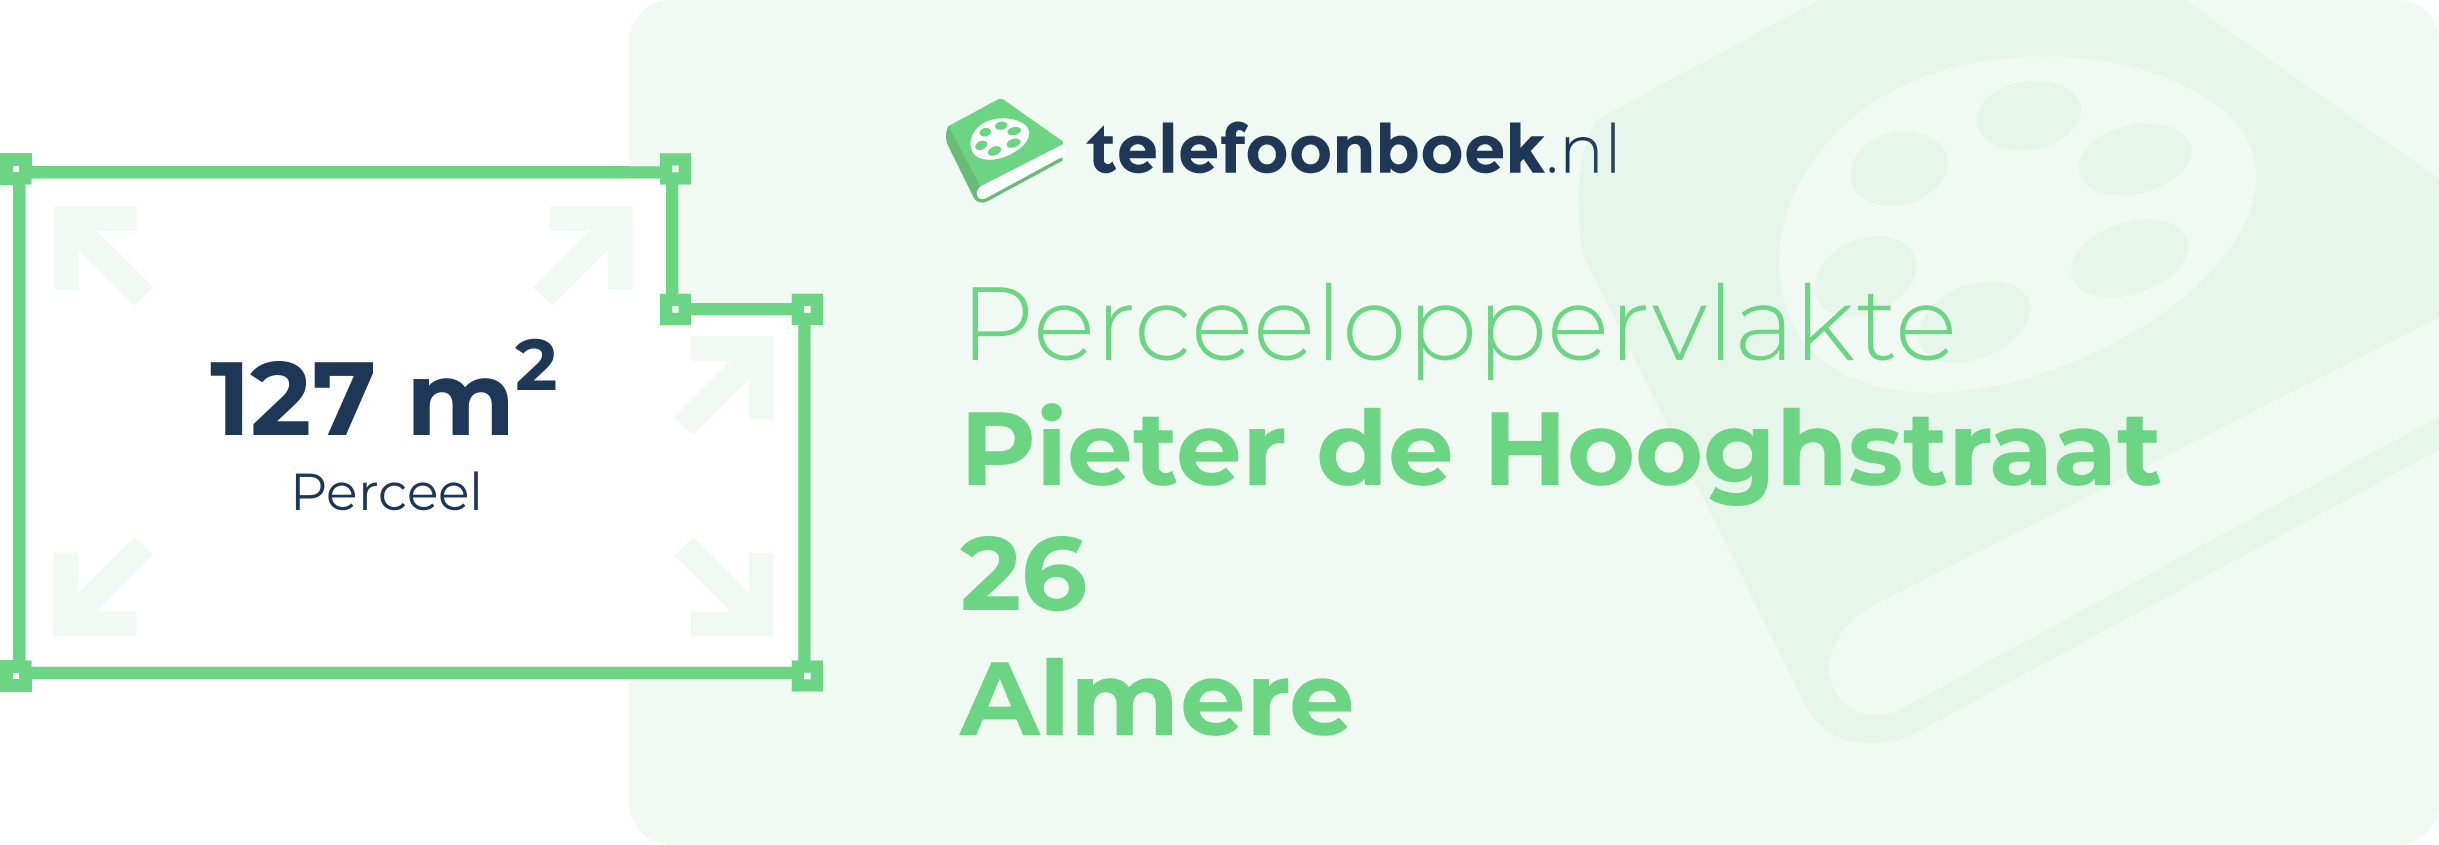 Perceeloppervlakte Pieter De Hooghstraat 26 Almere